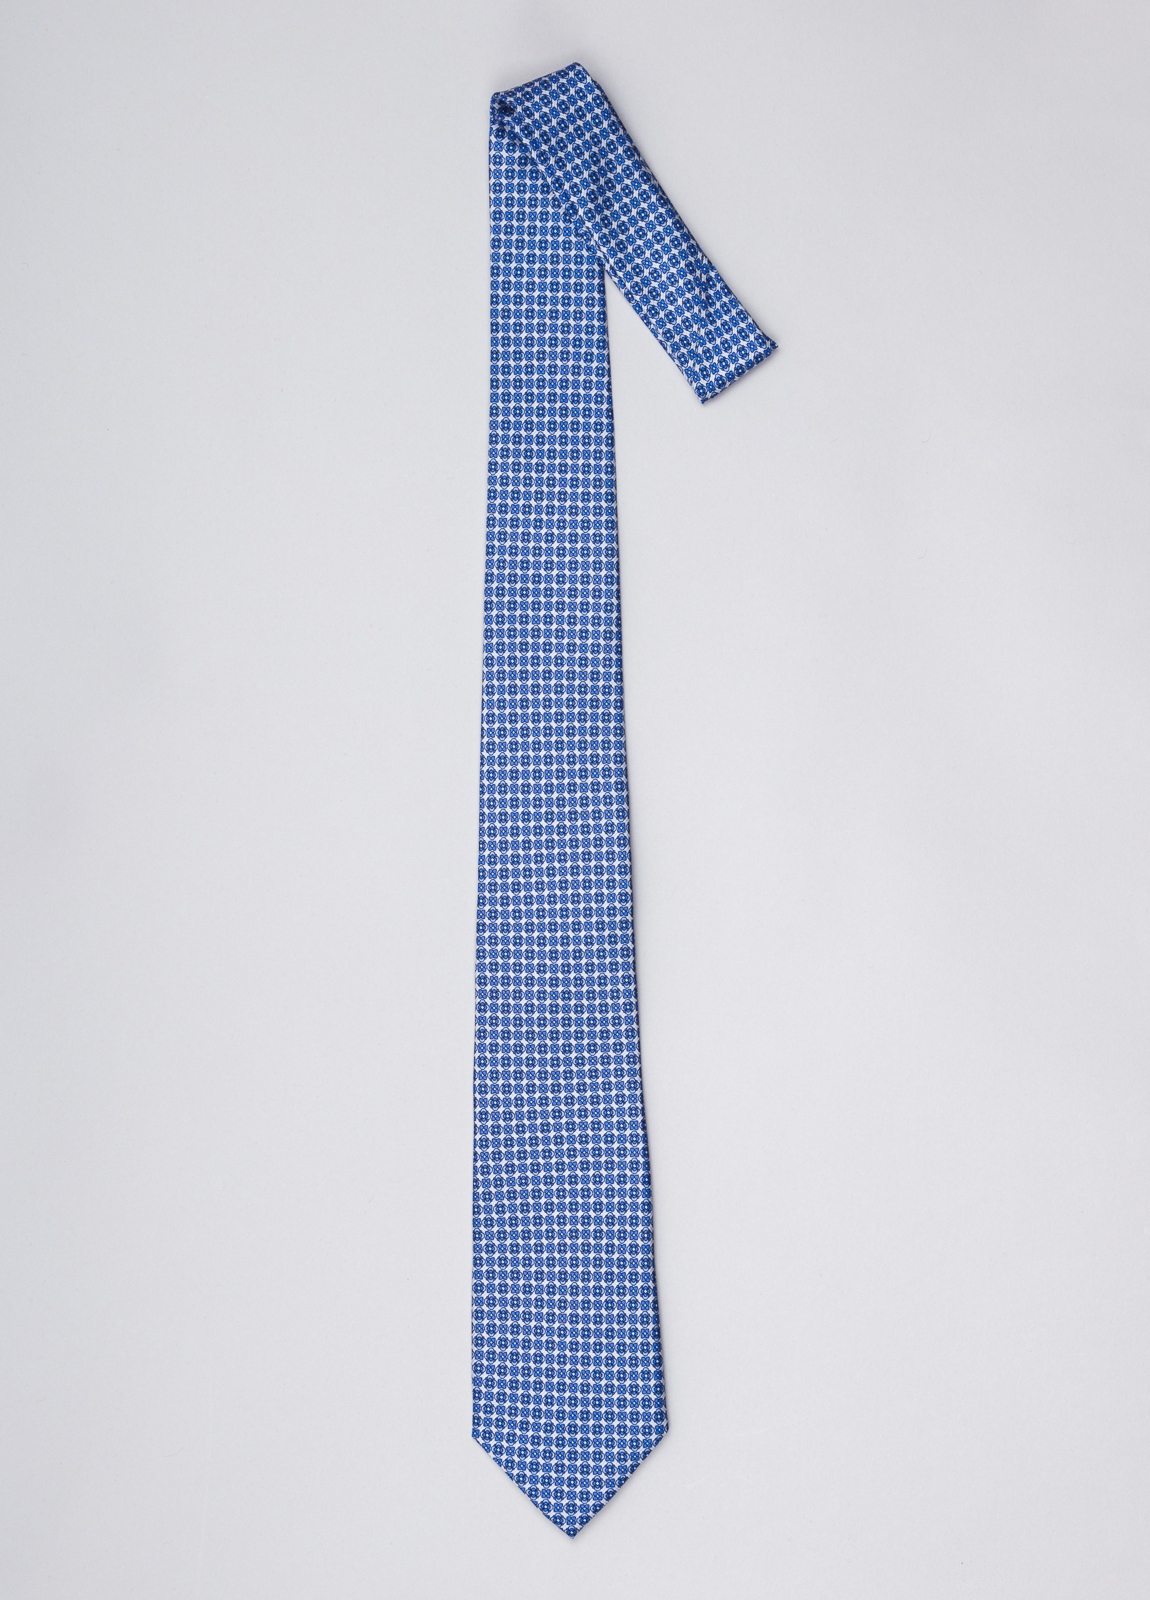 Corbata FUREST COLECCIÓN color azul con dibujo geométrico blanco - Ítem1